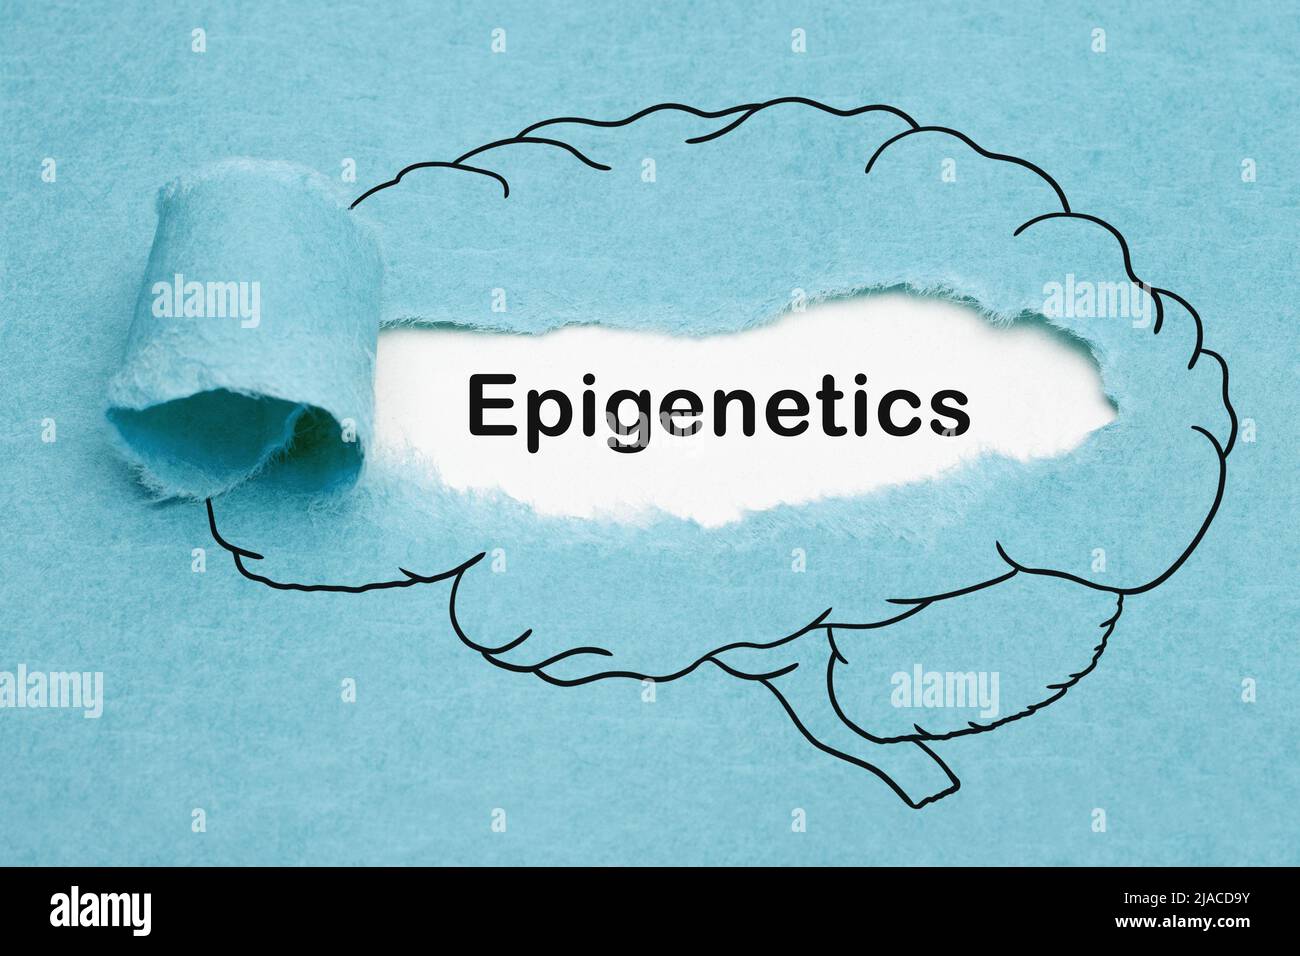 Wortepigenetik, die hinter zerrissenem blauem Papier im gezeichneten menschlichen Gehirn erscheint. Entwicklungspsychologie oder Biologie Konzept. Stockfoto